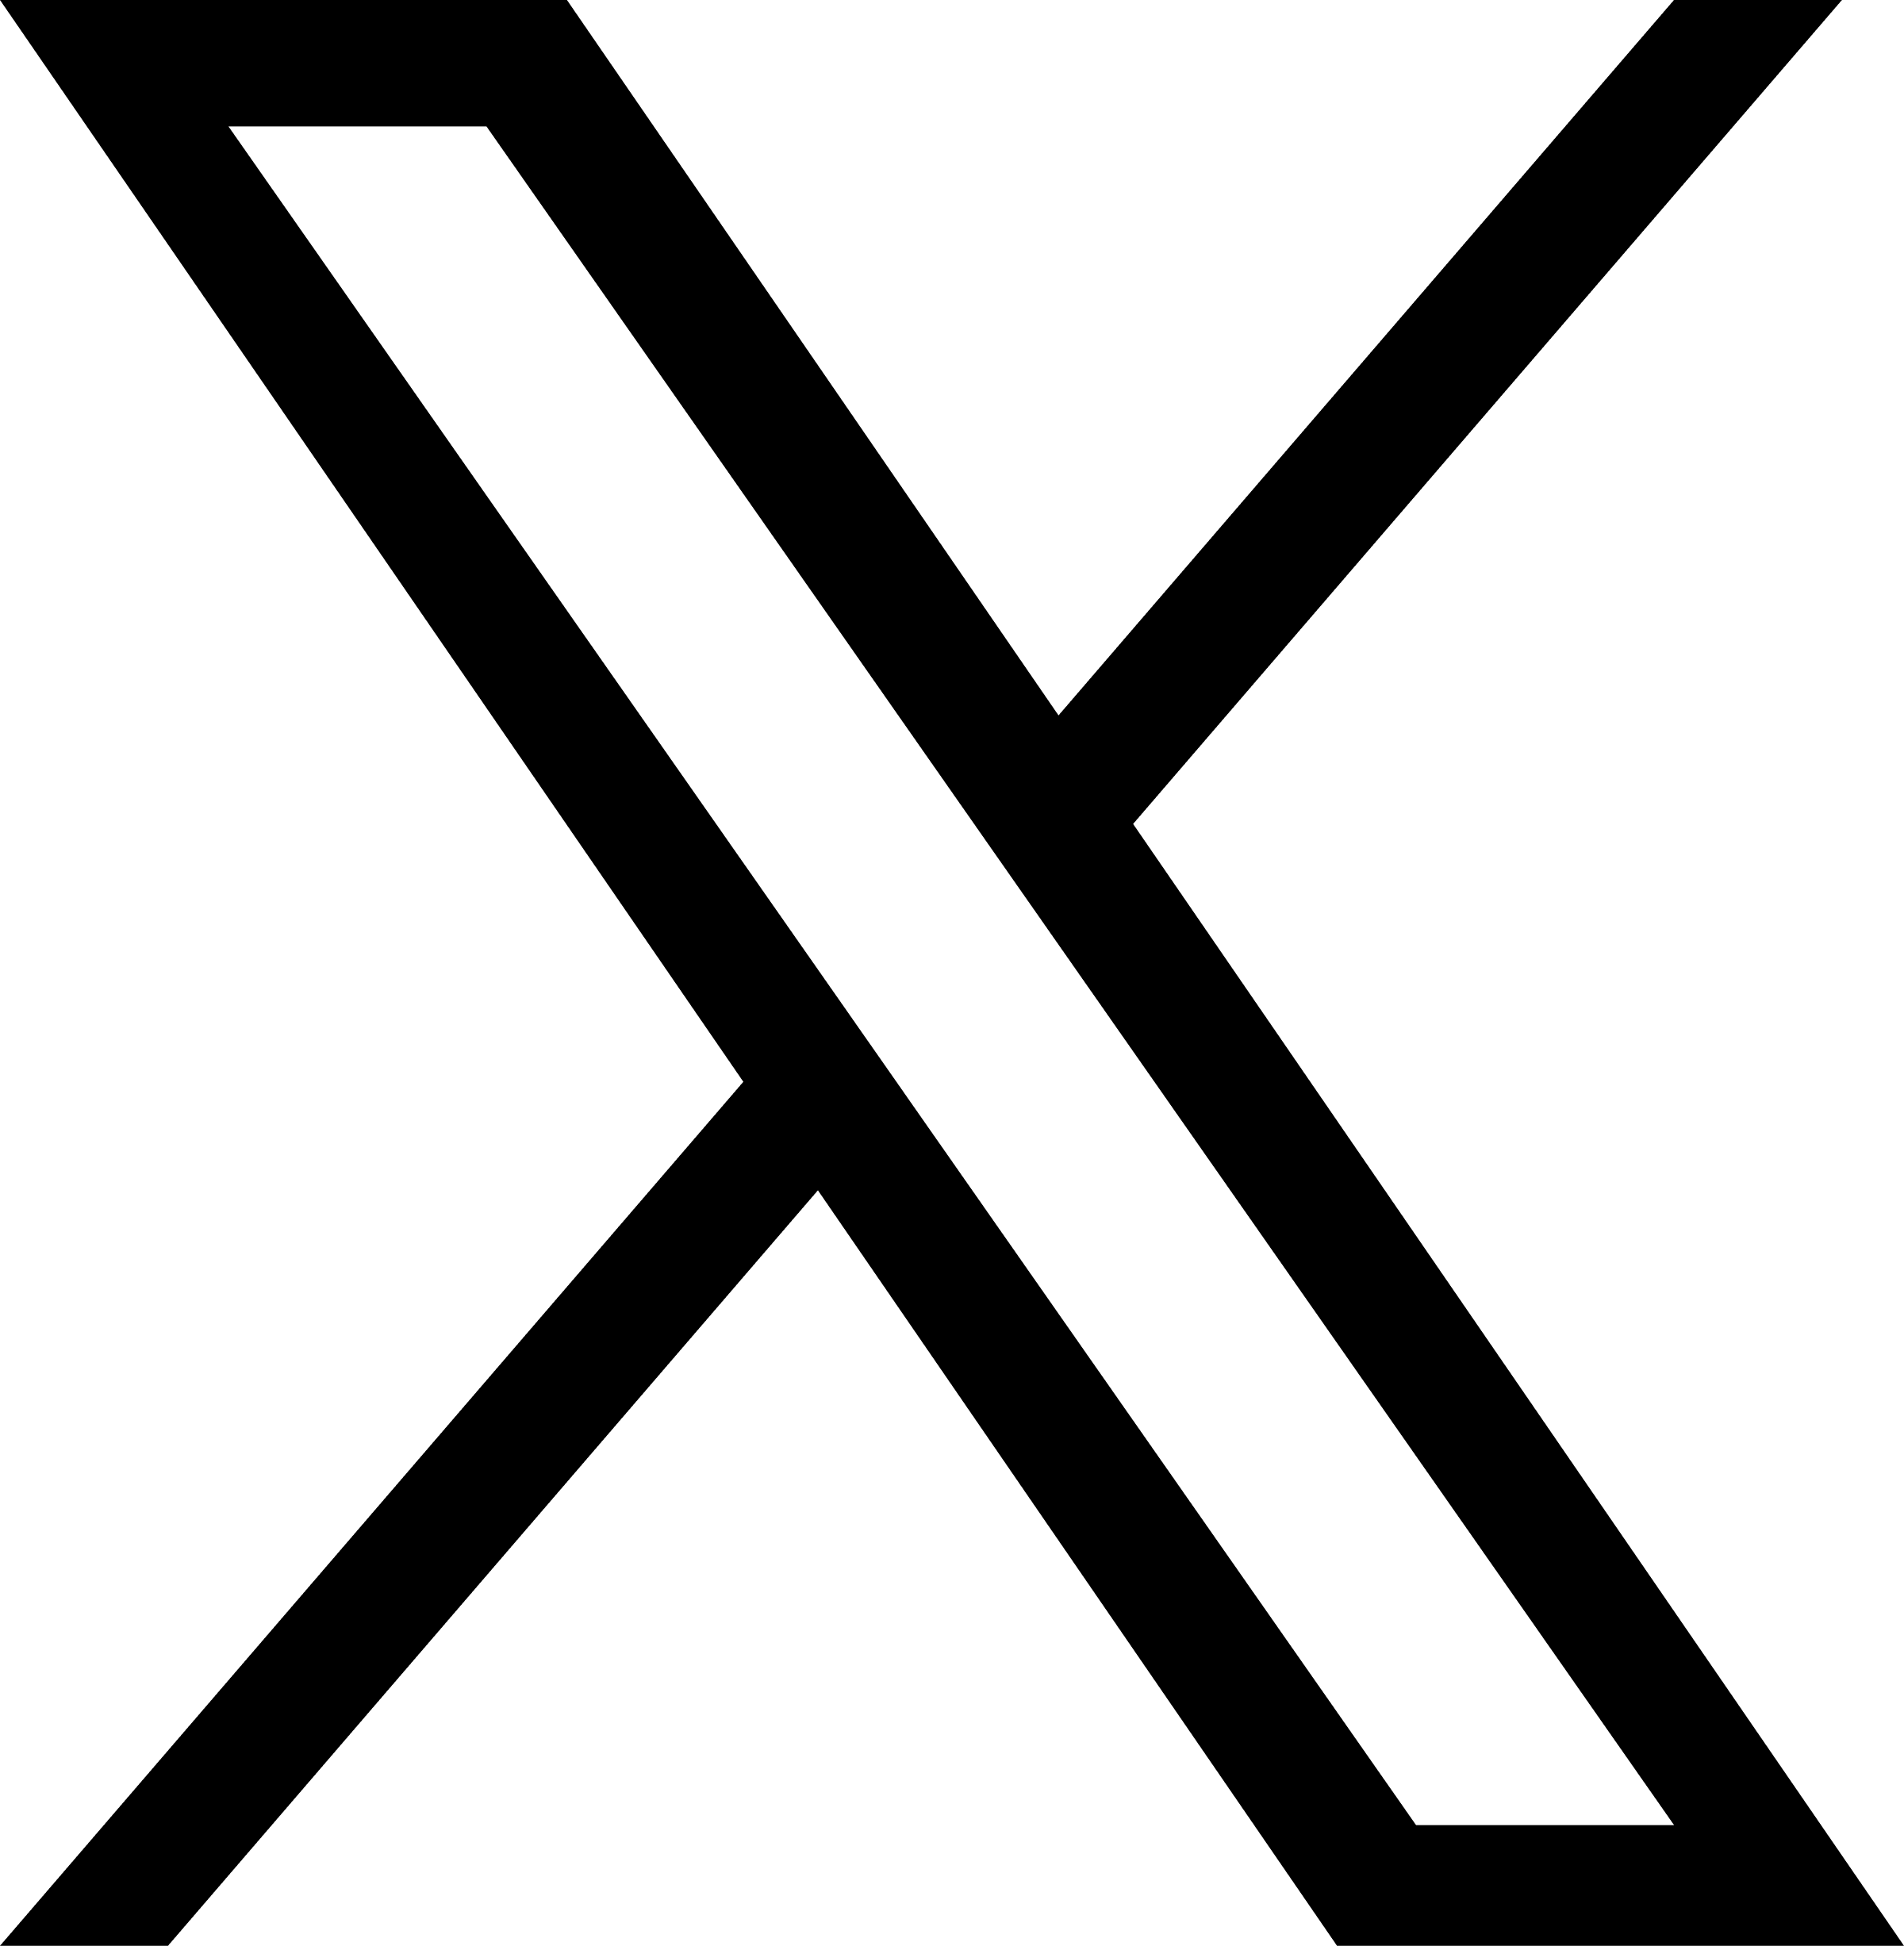 logo-black.png (100 KB)